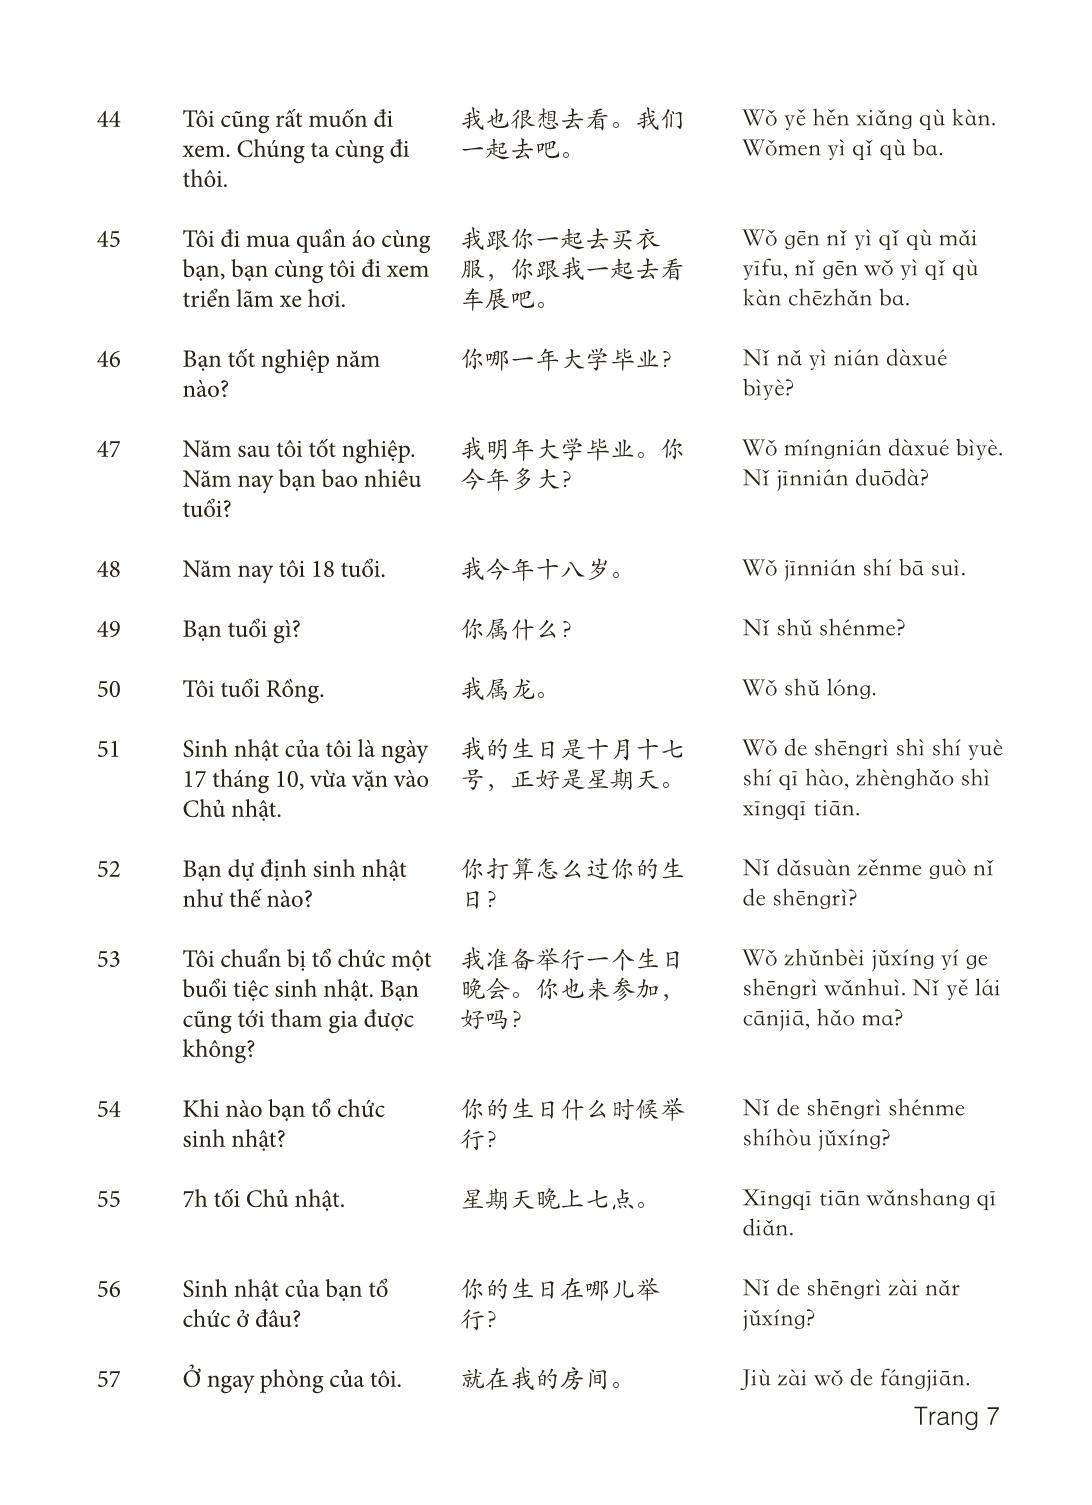 3000 Câu đàm thoại tiếng Hoa - Phần 5 trang 7